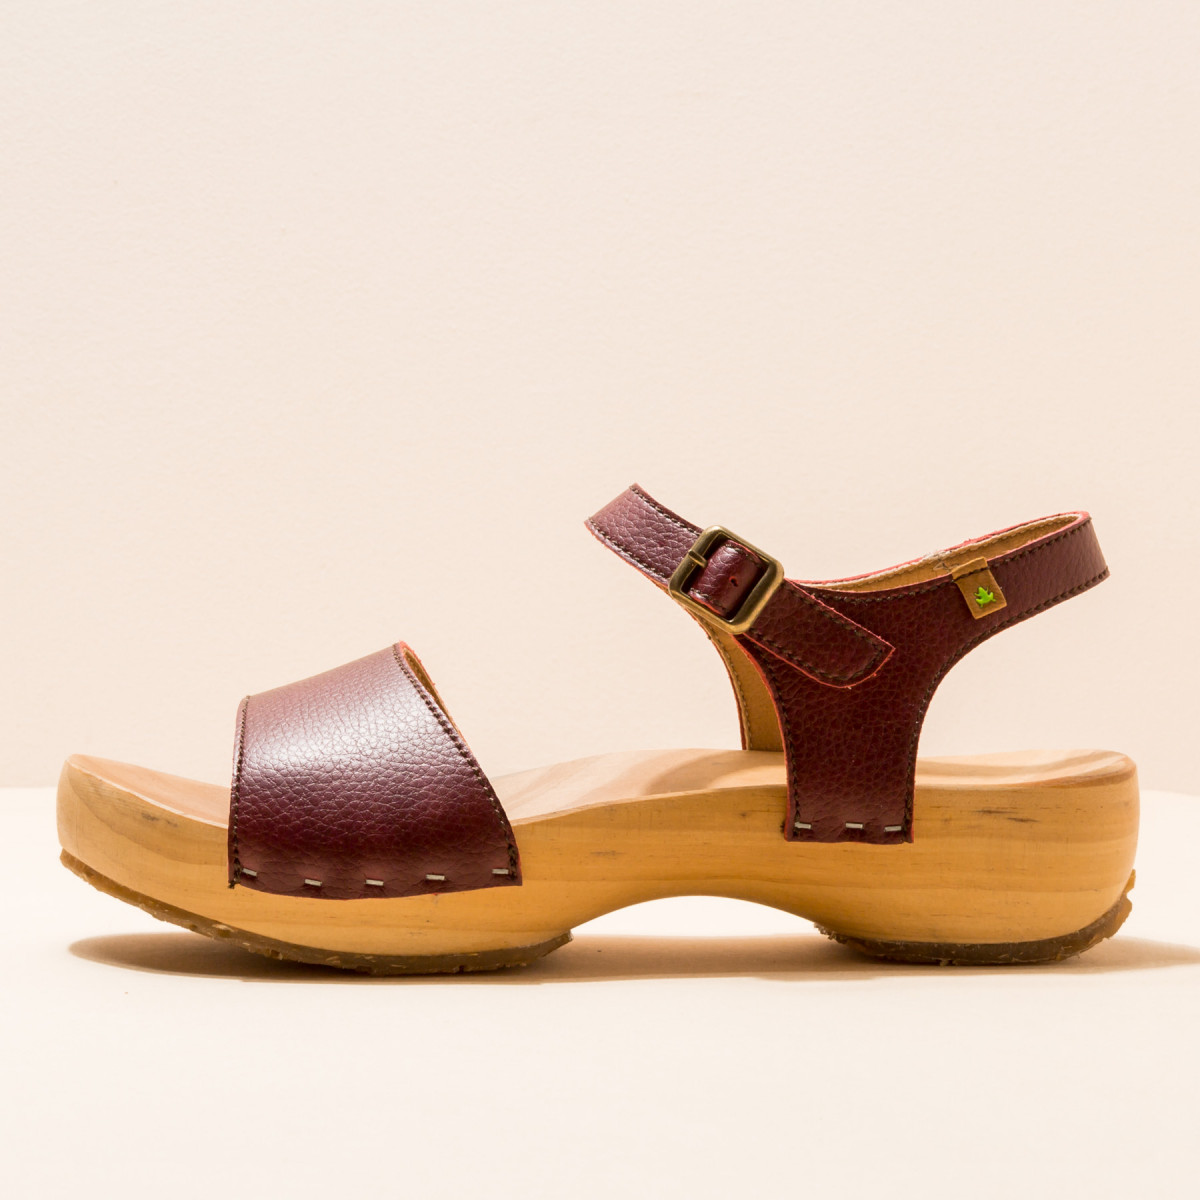 Sandales confortables véganes à plateforme en bois de pin naturel - Bordeaux - El naturalista